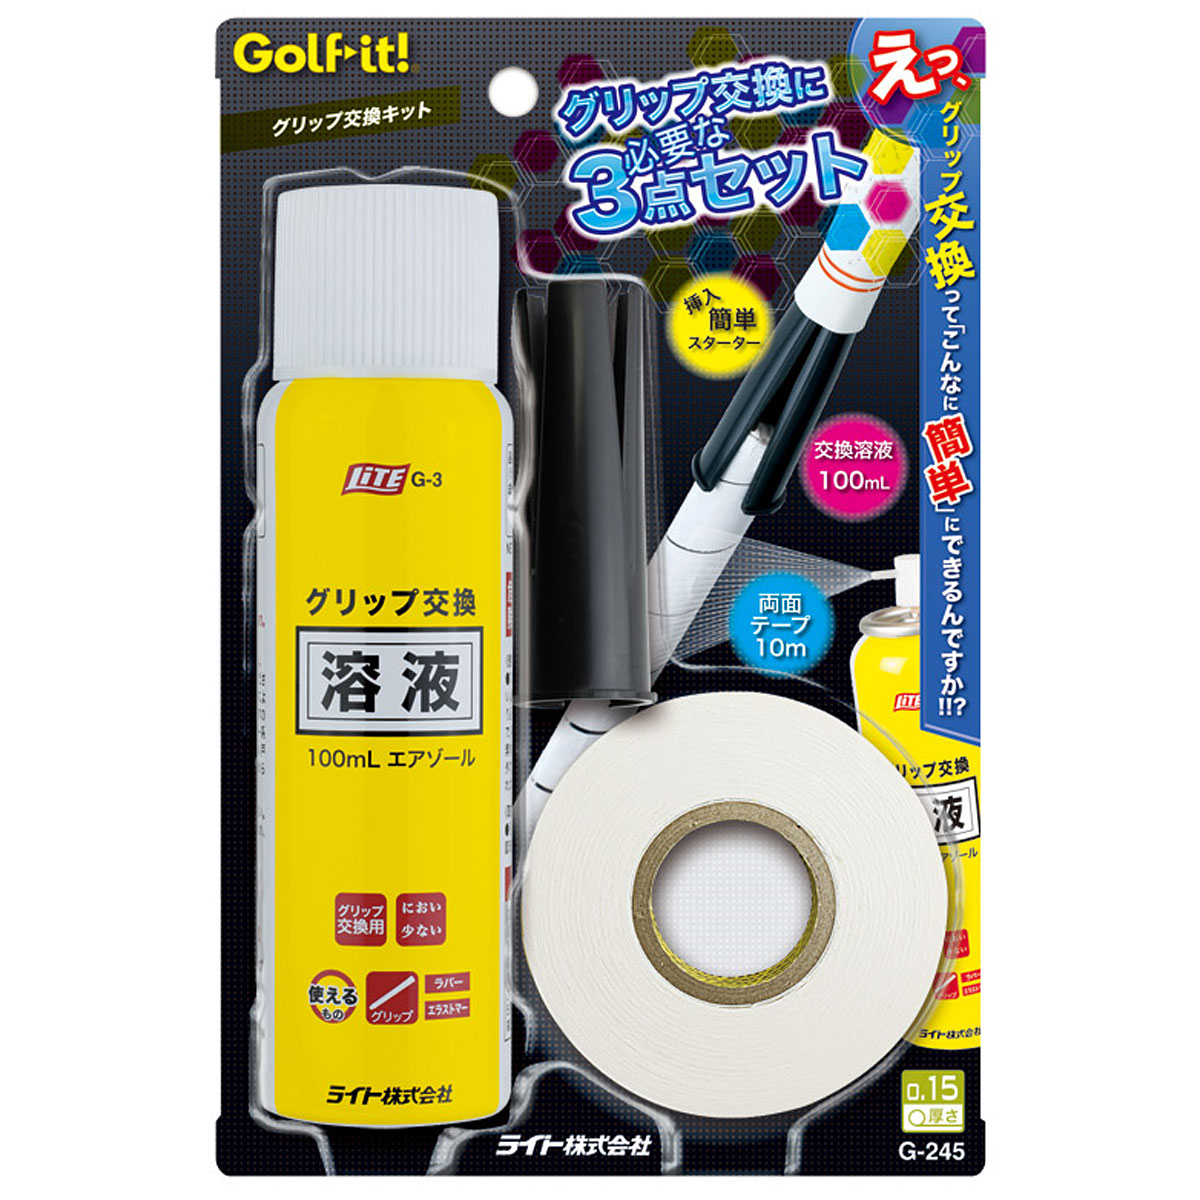 イオミック日本正規品 X-GRIP 男女兼用 ハードフィーリング(硬度 5) アイアンウッド用ゴルフグリップ 単品(1本)